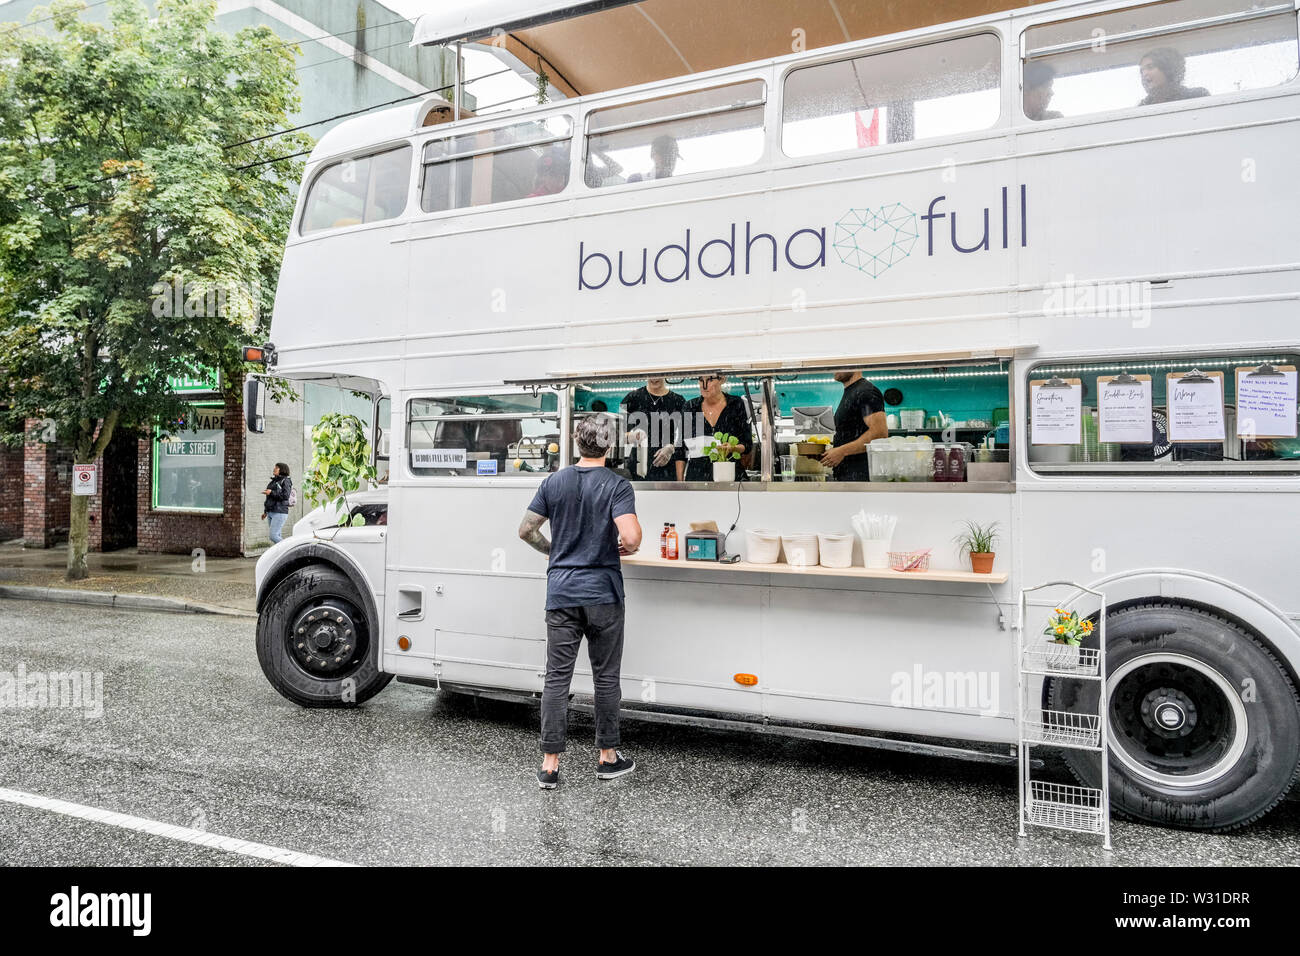 Pieno di buddha, double decker bus, cibo carrello, la Giornata senza automobili, Unità commerciale, Vancouver, British Columbia, Canada Foto Stock